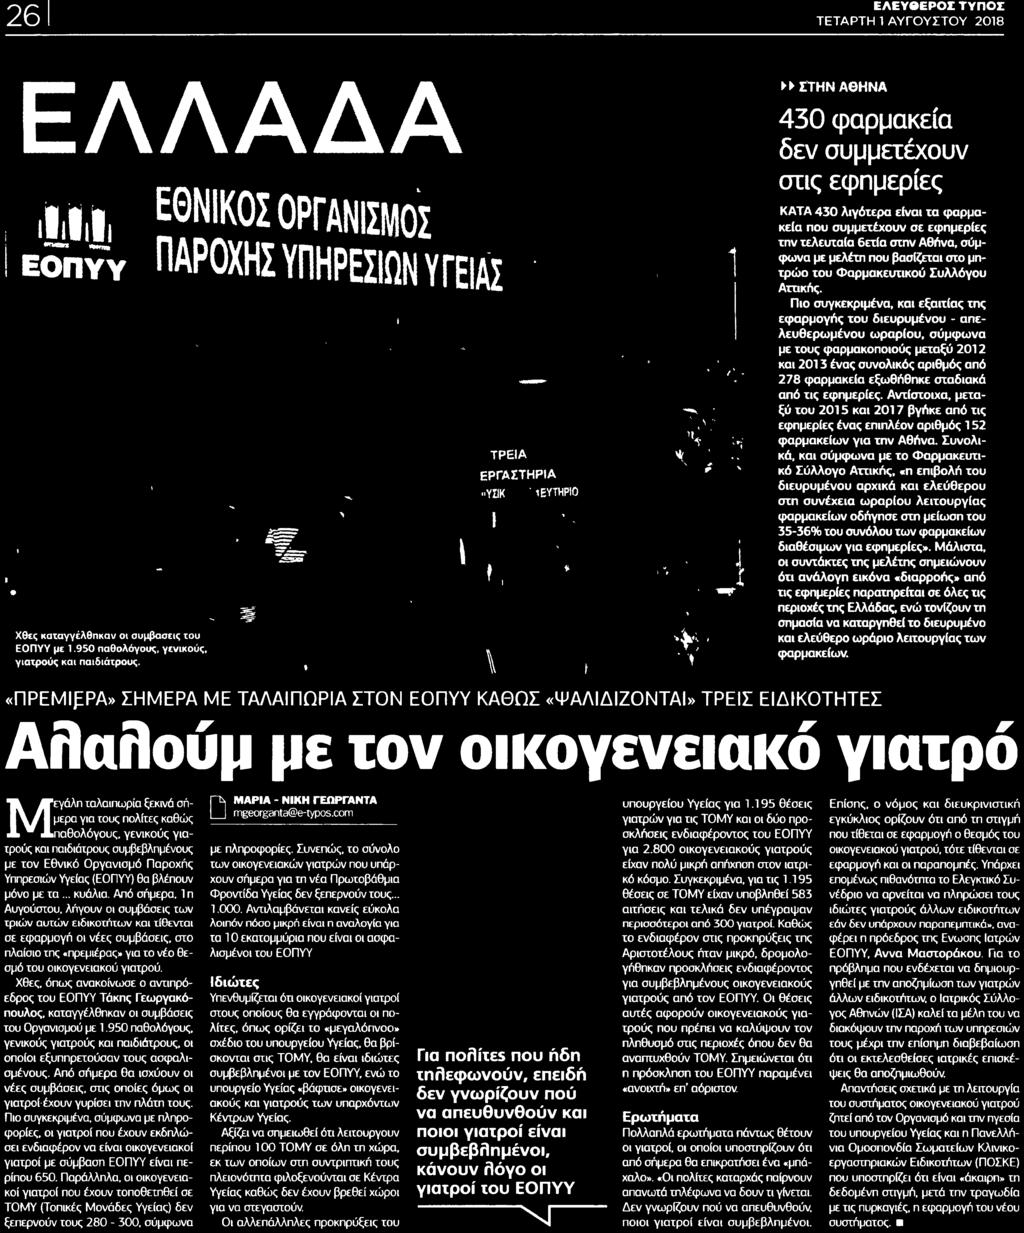 201 7 βγήκε από τις εφημερίες ένας επιπλέον αριθμός 1 52 φαρμακείων για την Αθήνα Συνολικά και σύμφωνα με το Φαρμακευτικό Σύλλογο Αττικής η επιβολή του διευρυμένου αρχικά και ελεύθερου στη συνέχεια